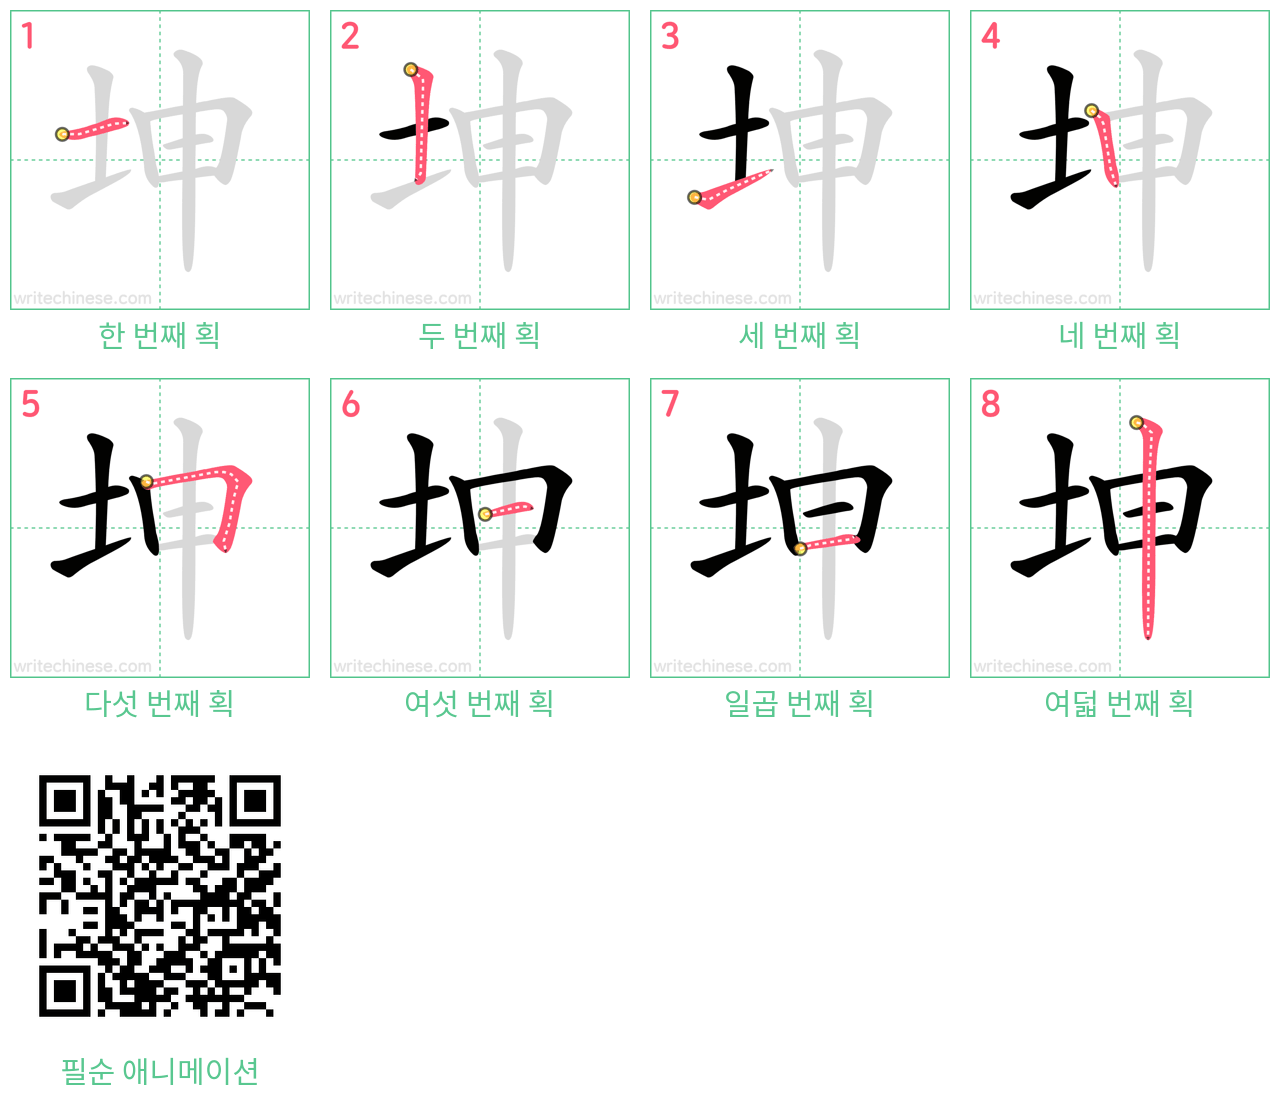 坤 step-by-step stroke order diagrams